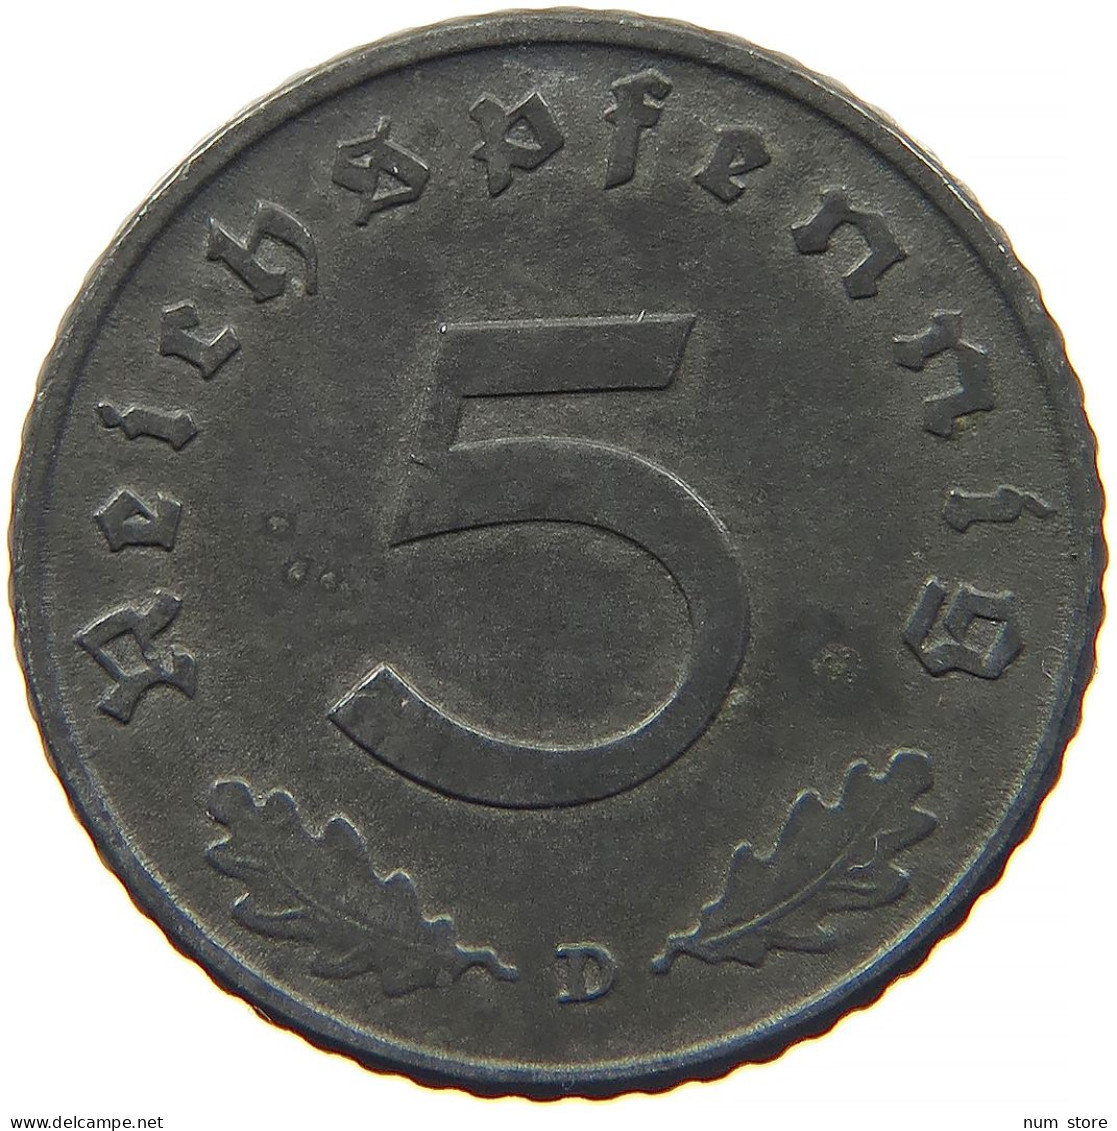 GERMANY 5 REICHSPFENNIG 1941 D #s091 0919 - 5 Reichspfennig